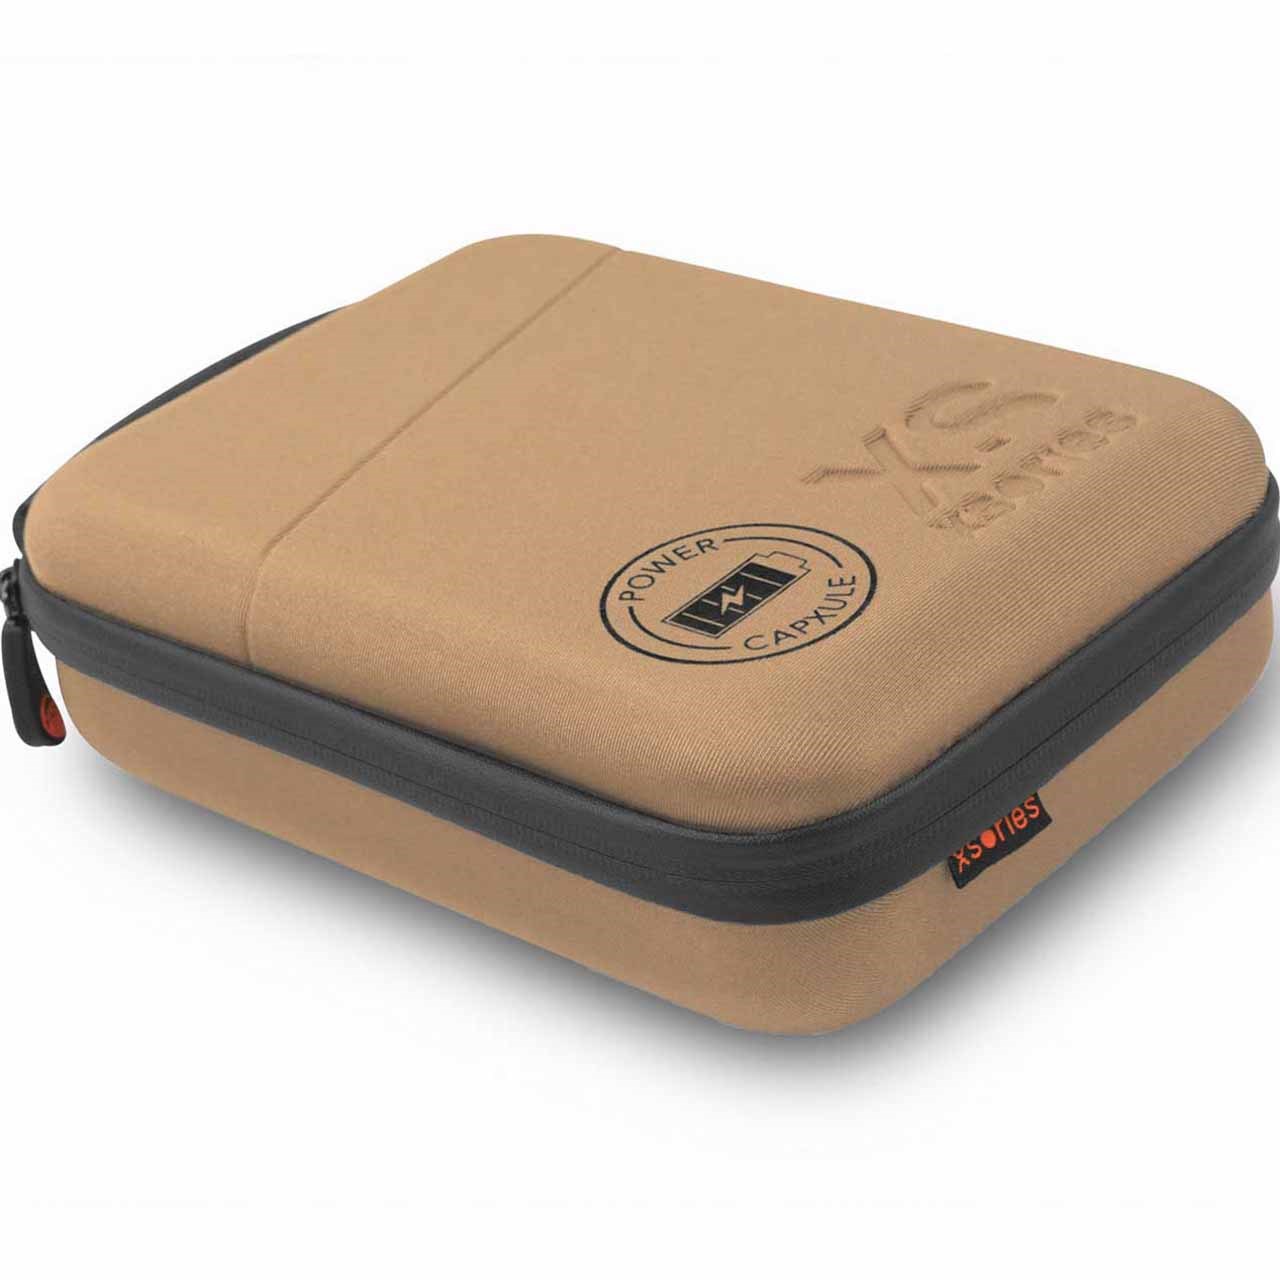 کیف دوربین های گوپرو به همراه پاور بانک اکس سوریز مدل Power Capxule Small